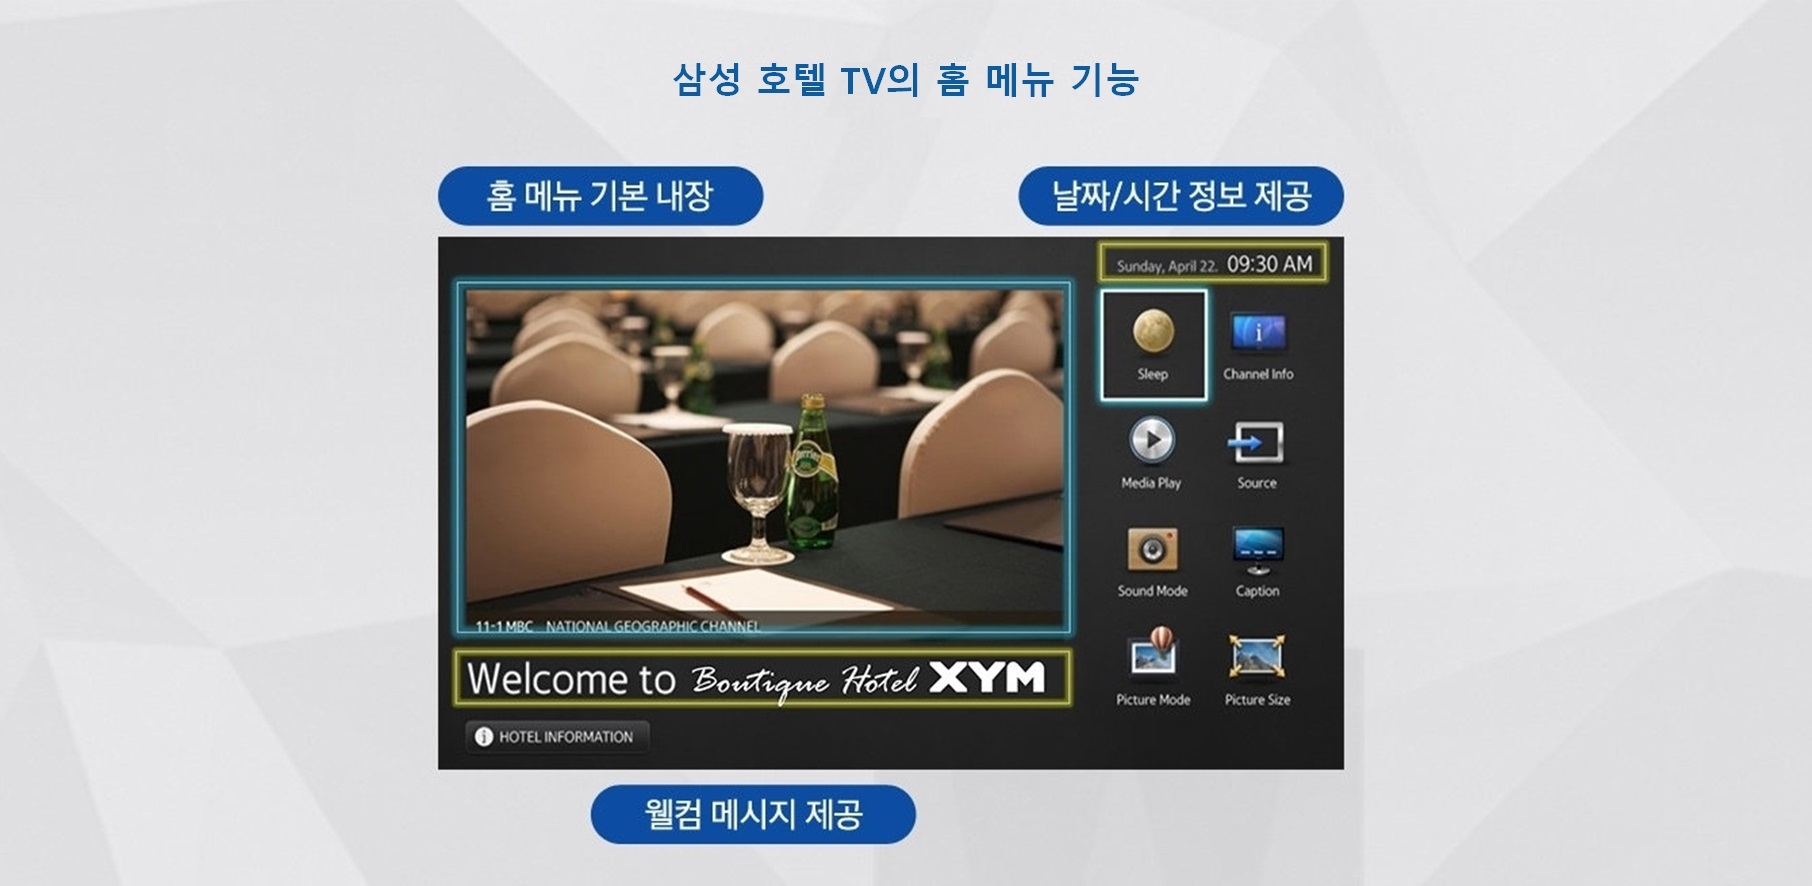 삼성 호텔TV의 홈 메뉴 기능을 사진과 함께 상세히 설명하고 있다 왼쪽 홈 메뉴 기본 내장, 왼쪽 하단 웰컴 메시지 제공, 오른쪽 날짜/시간 정보 제공